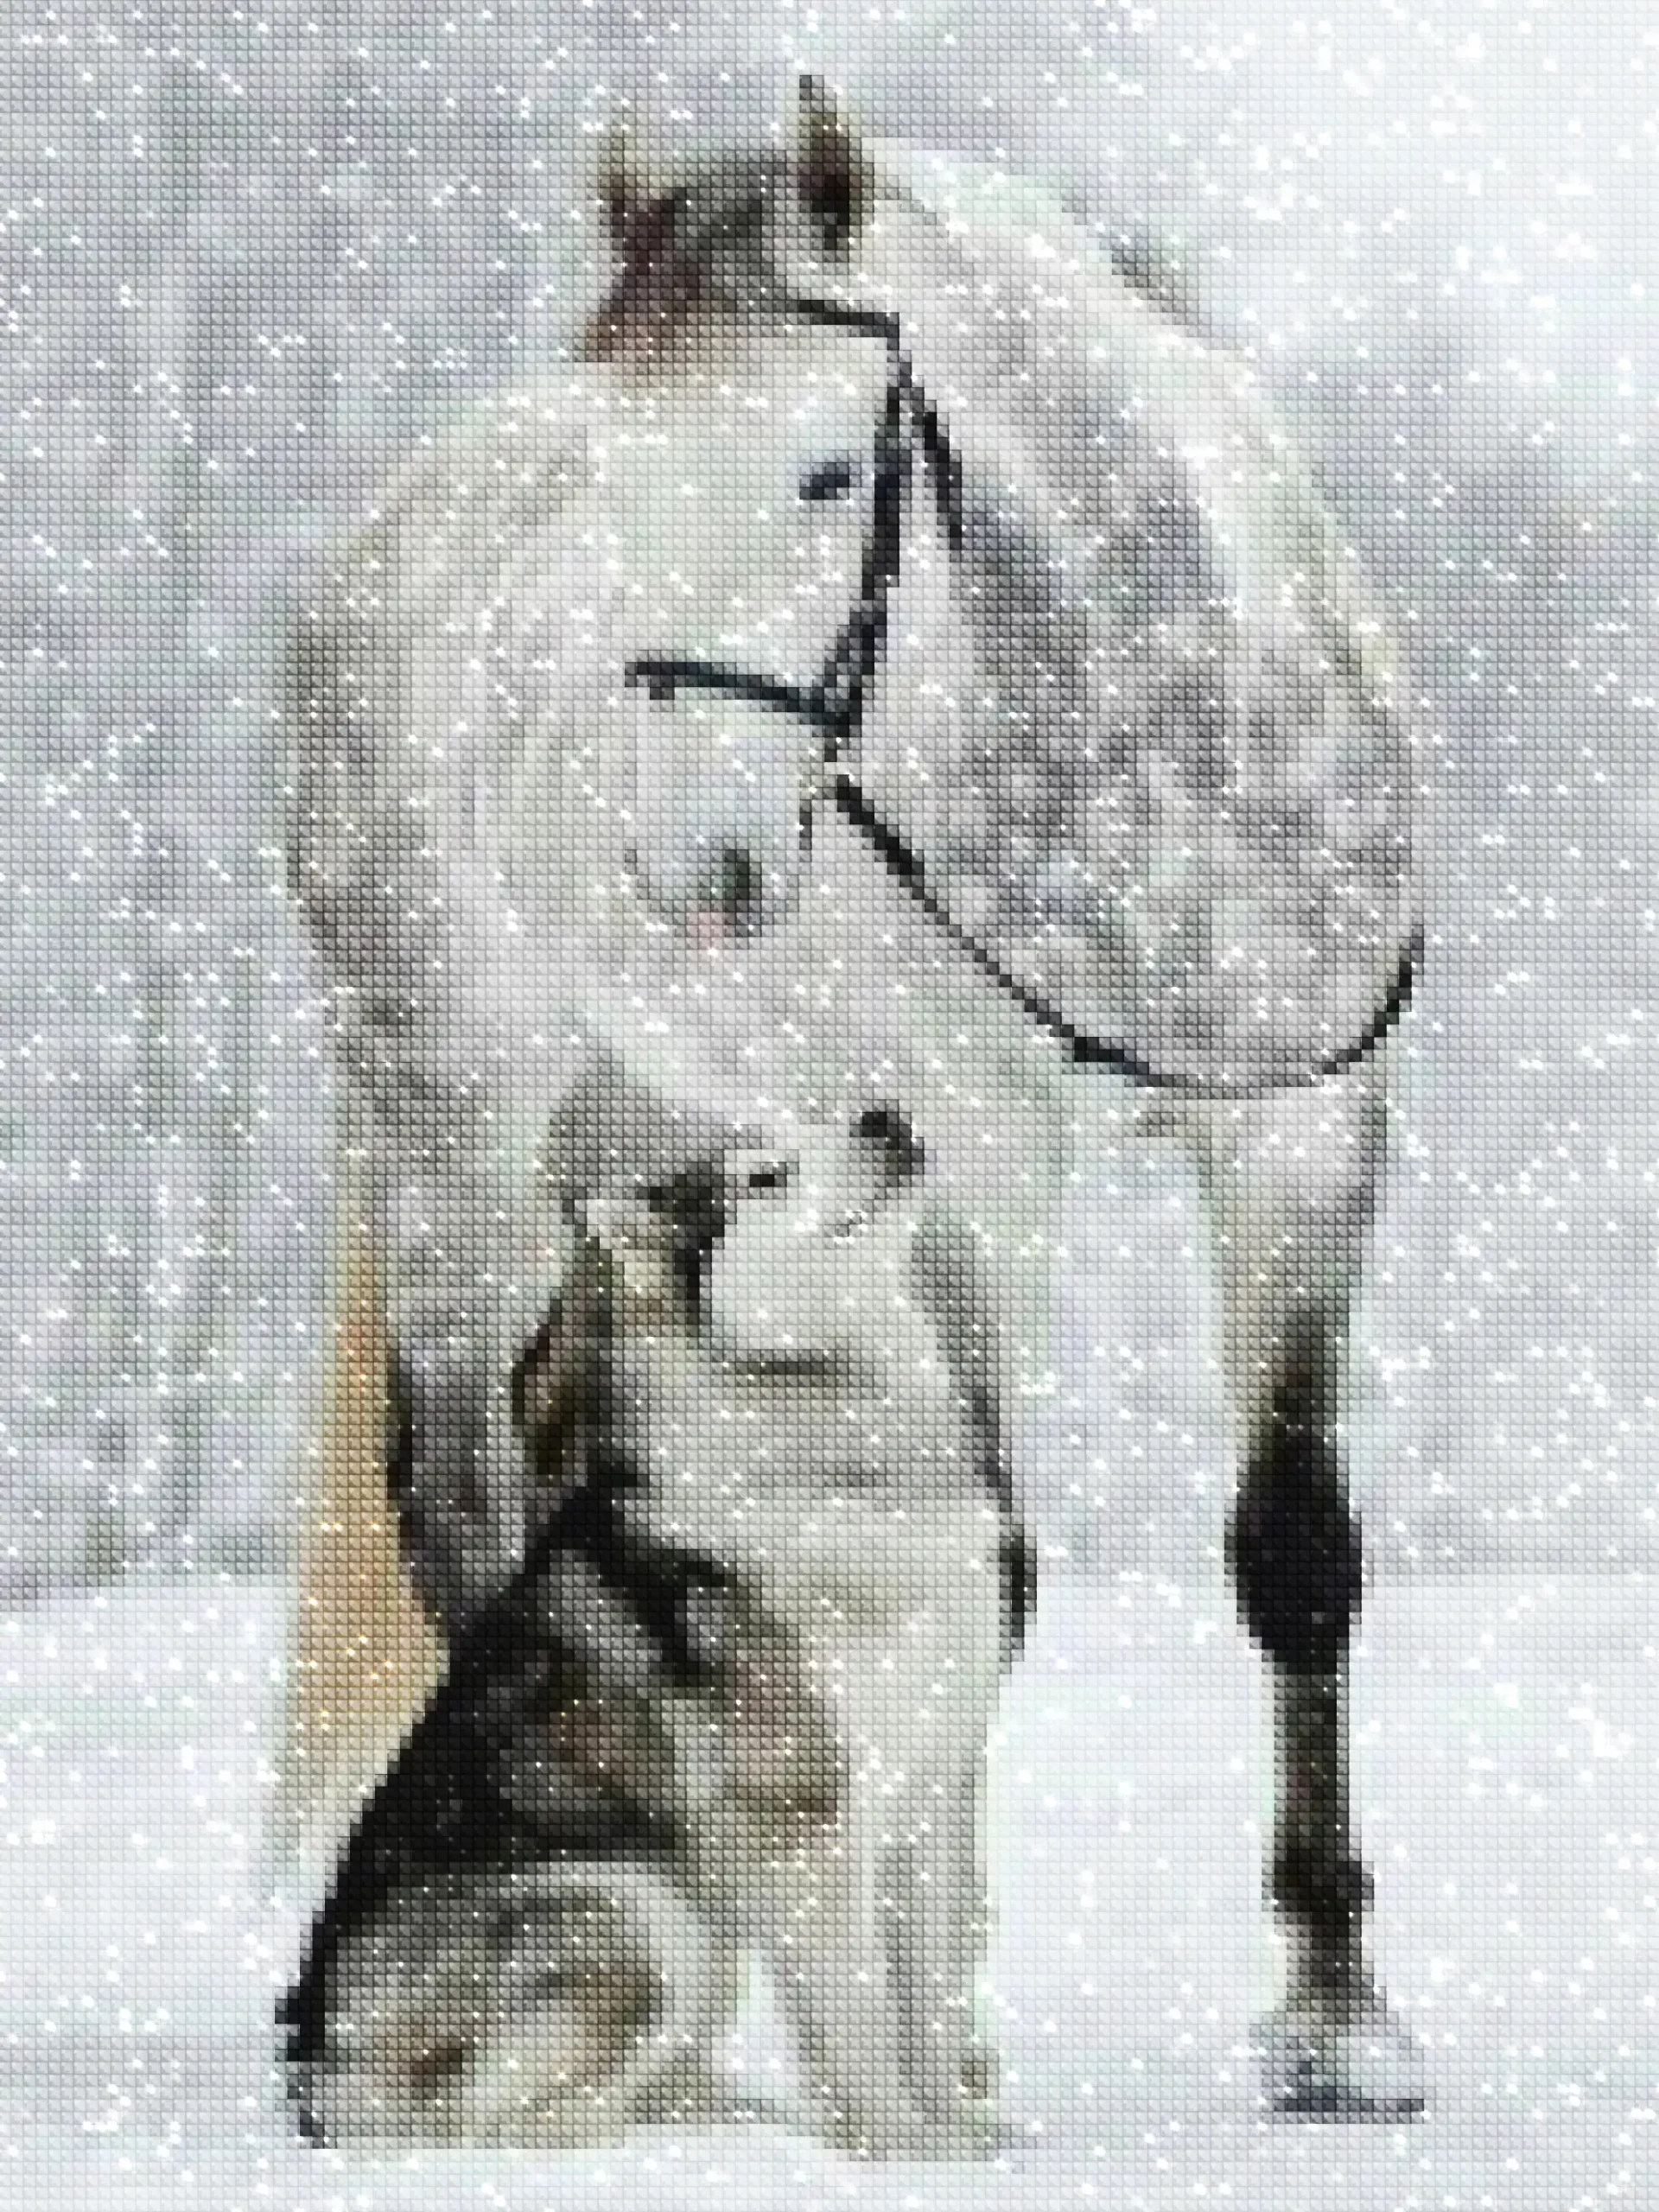 diamanten-tovenaar-diamant-schilderpakketten-dieren-wolf-mooi paard en puppy in de sneeuw-diamonds.webp